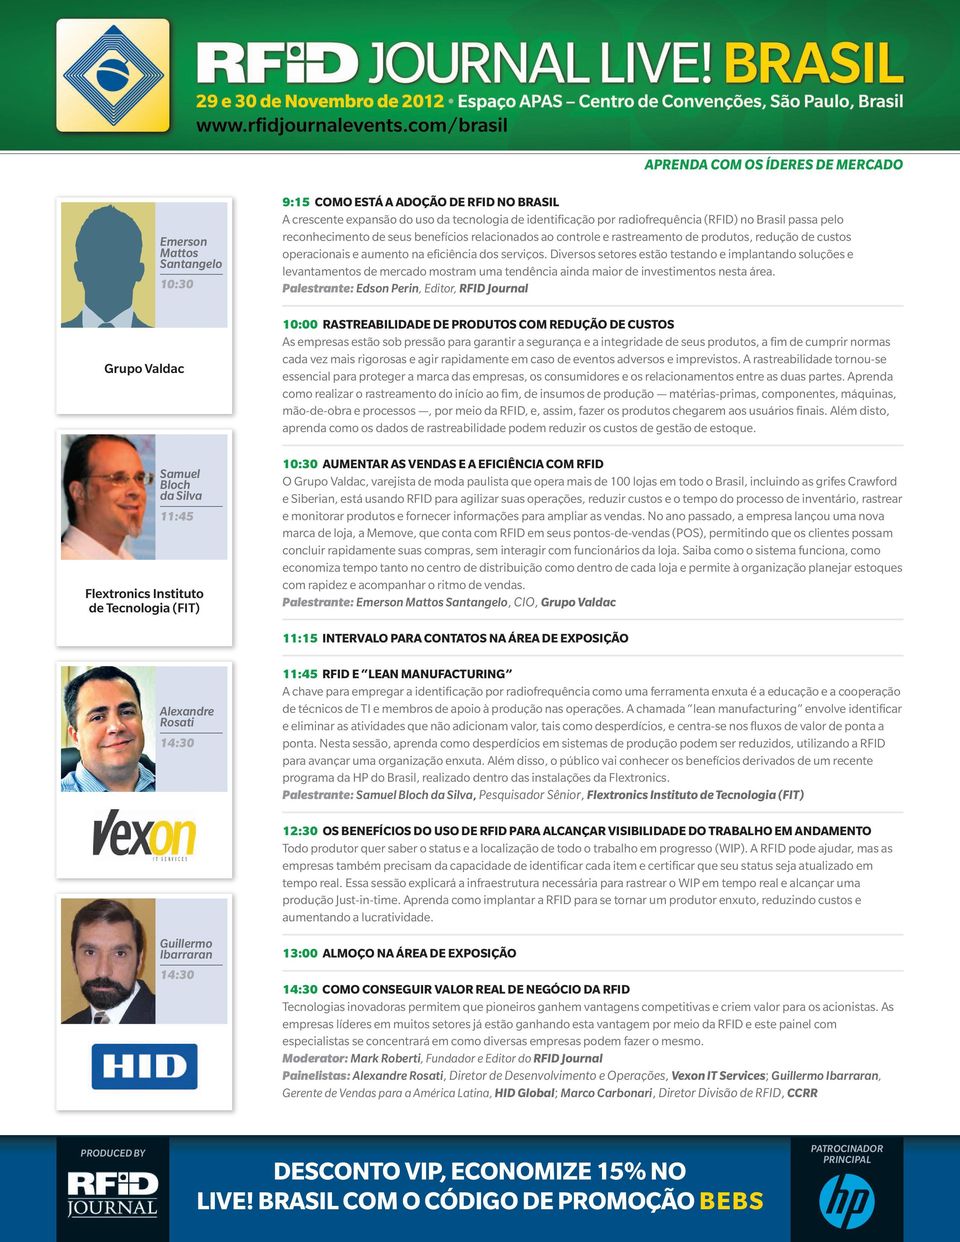 (RFID) no Brasil passa pelo reconhecimento de seus benefícios relacionados ao controle e rastreamento de produtos, redução de custos operacionais e aumento na eficiência dos serviços.